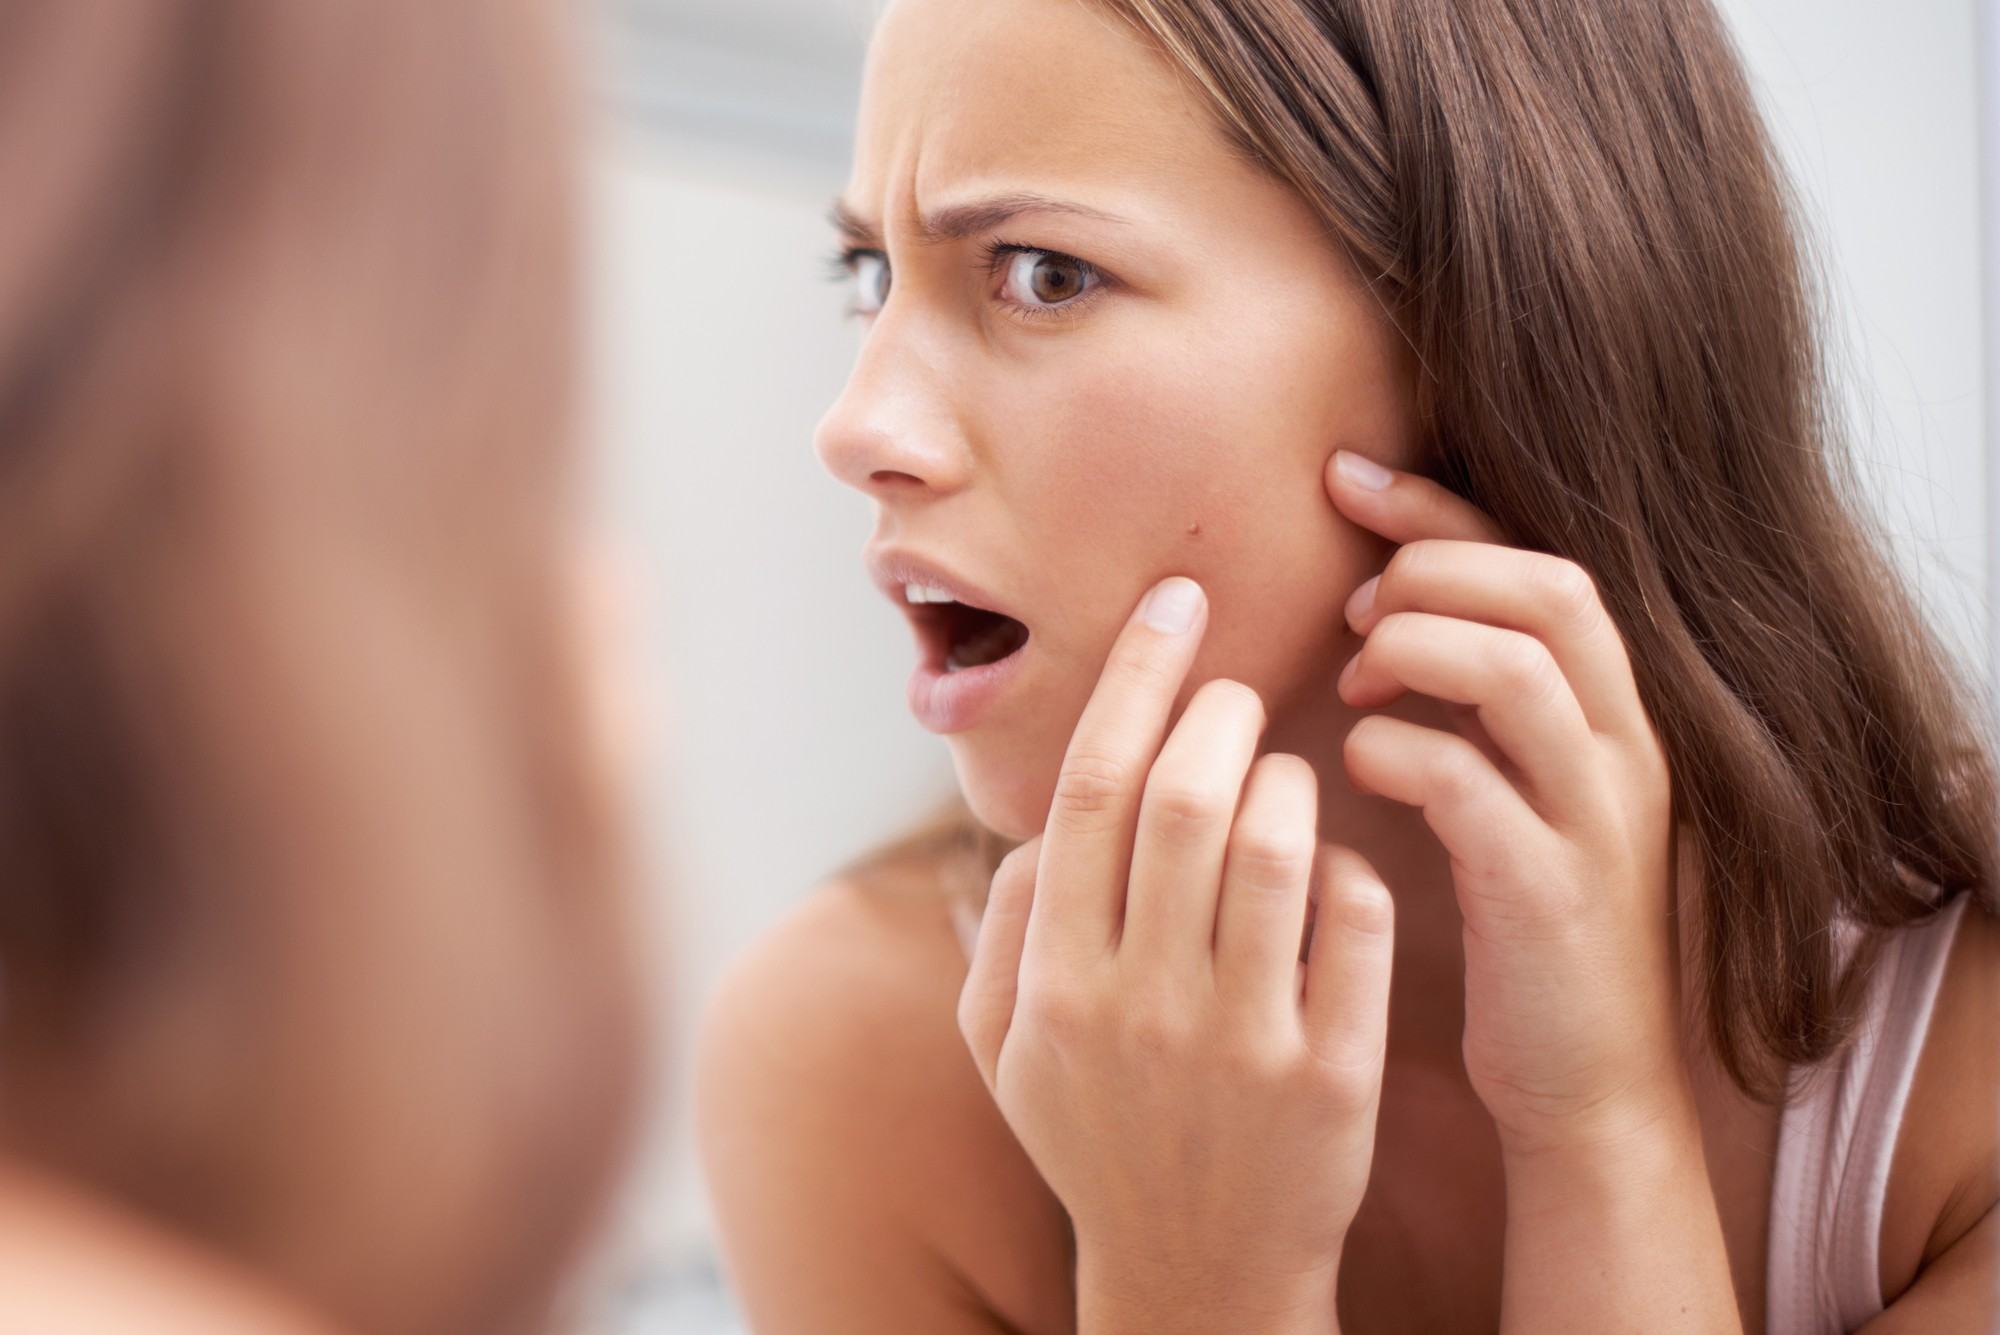 Mọc mụn ở bất kỳ vị trí nào trên khuôn mặt cũng có thể ngầm cảnh báo một vài vấn đề sức khỏe đang xảy ra trong cơ thể bạn - Ảnh 2.